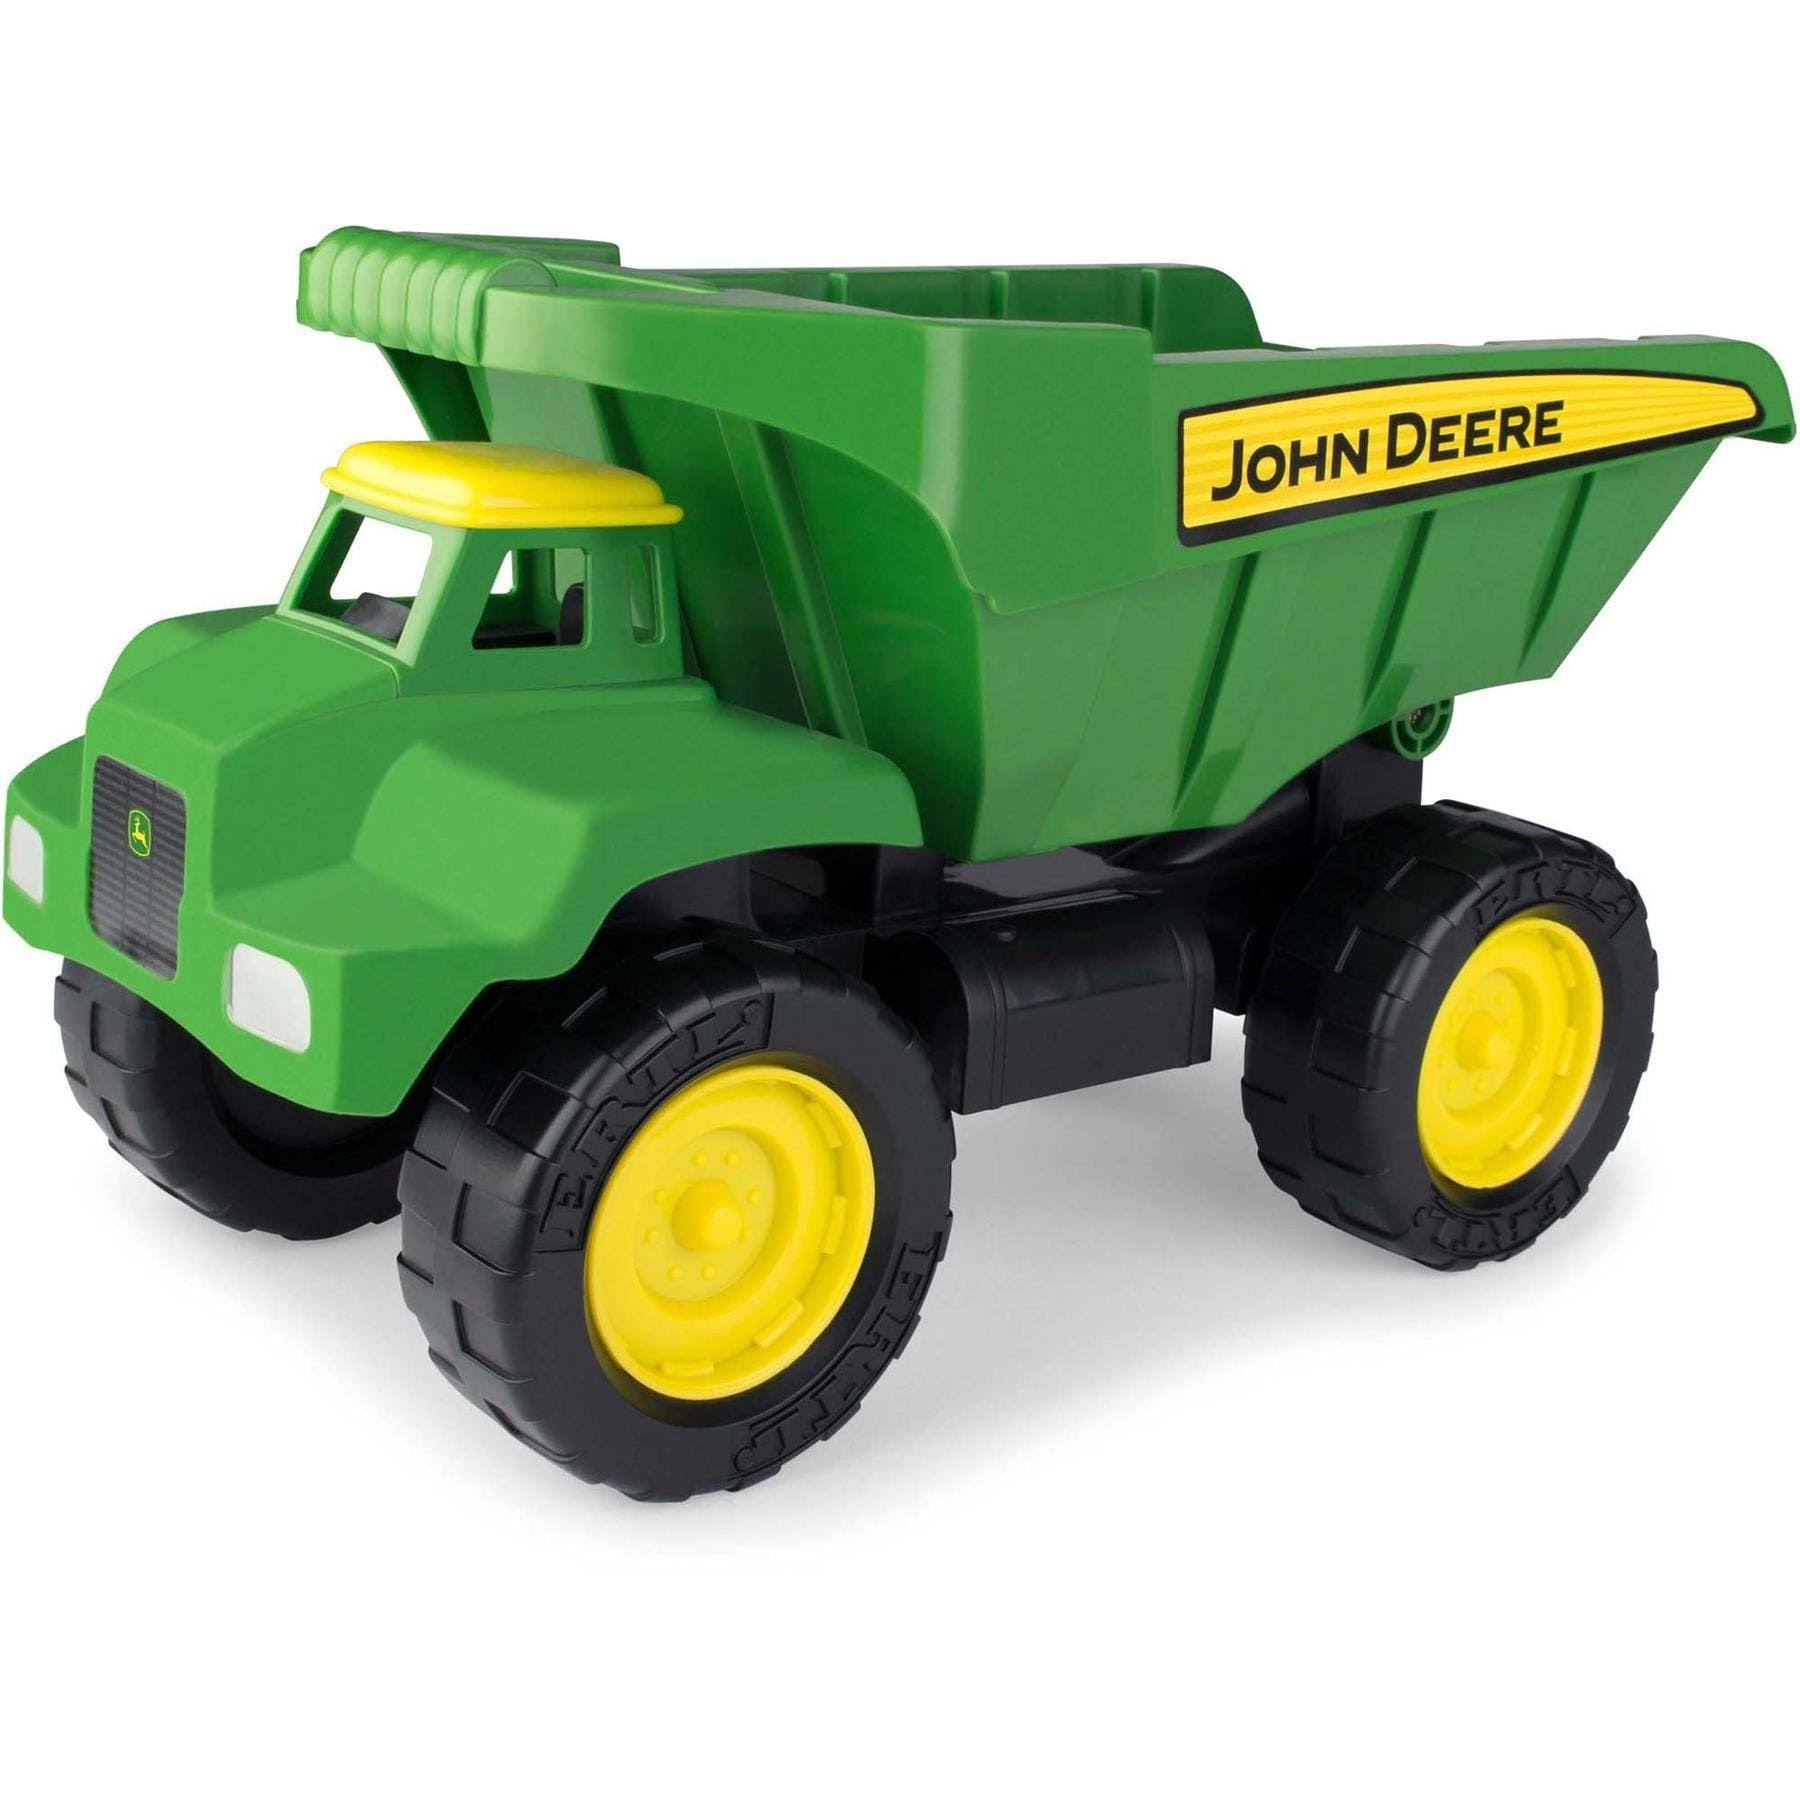 John Deere Big Scoop Dump Truck Toy - 38cm